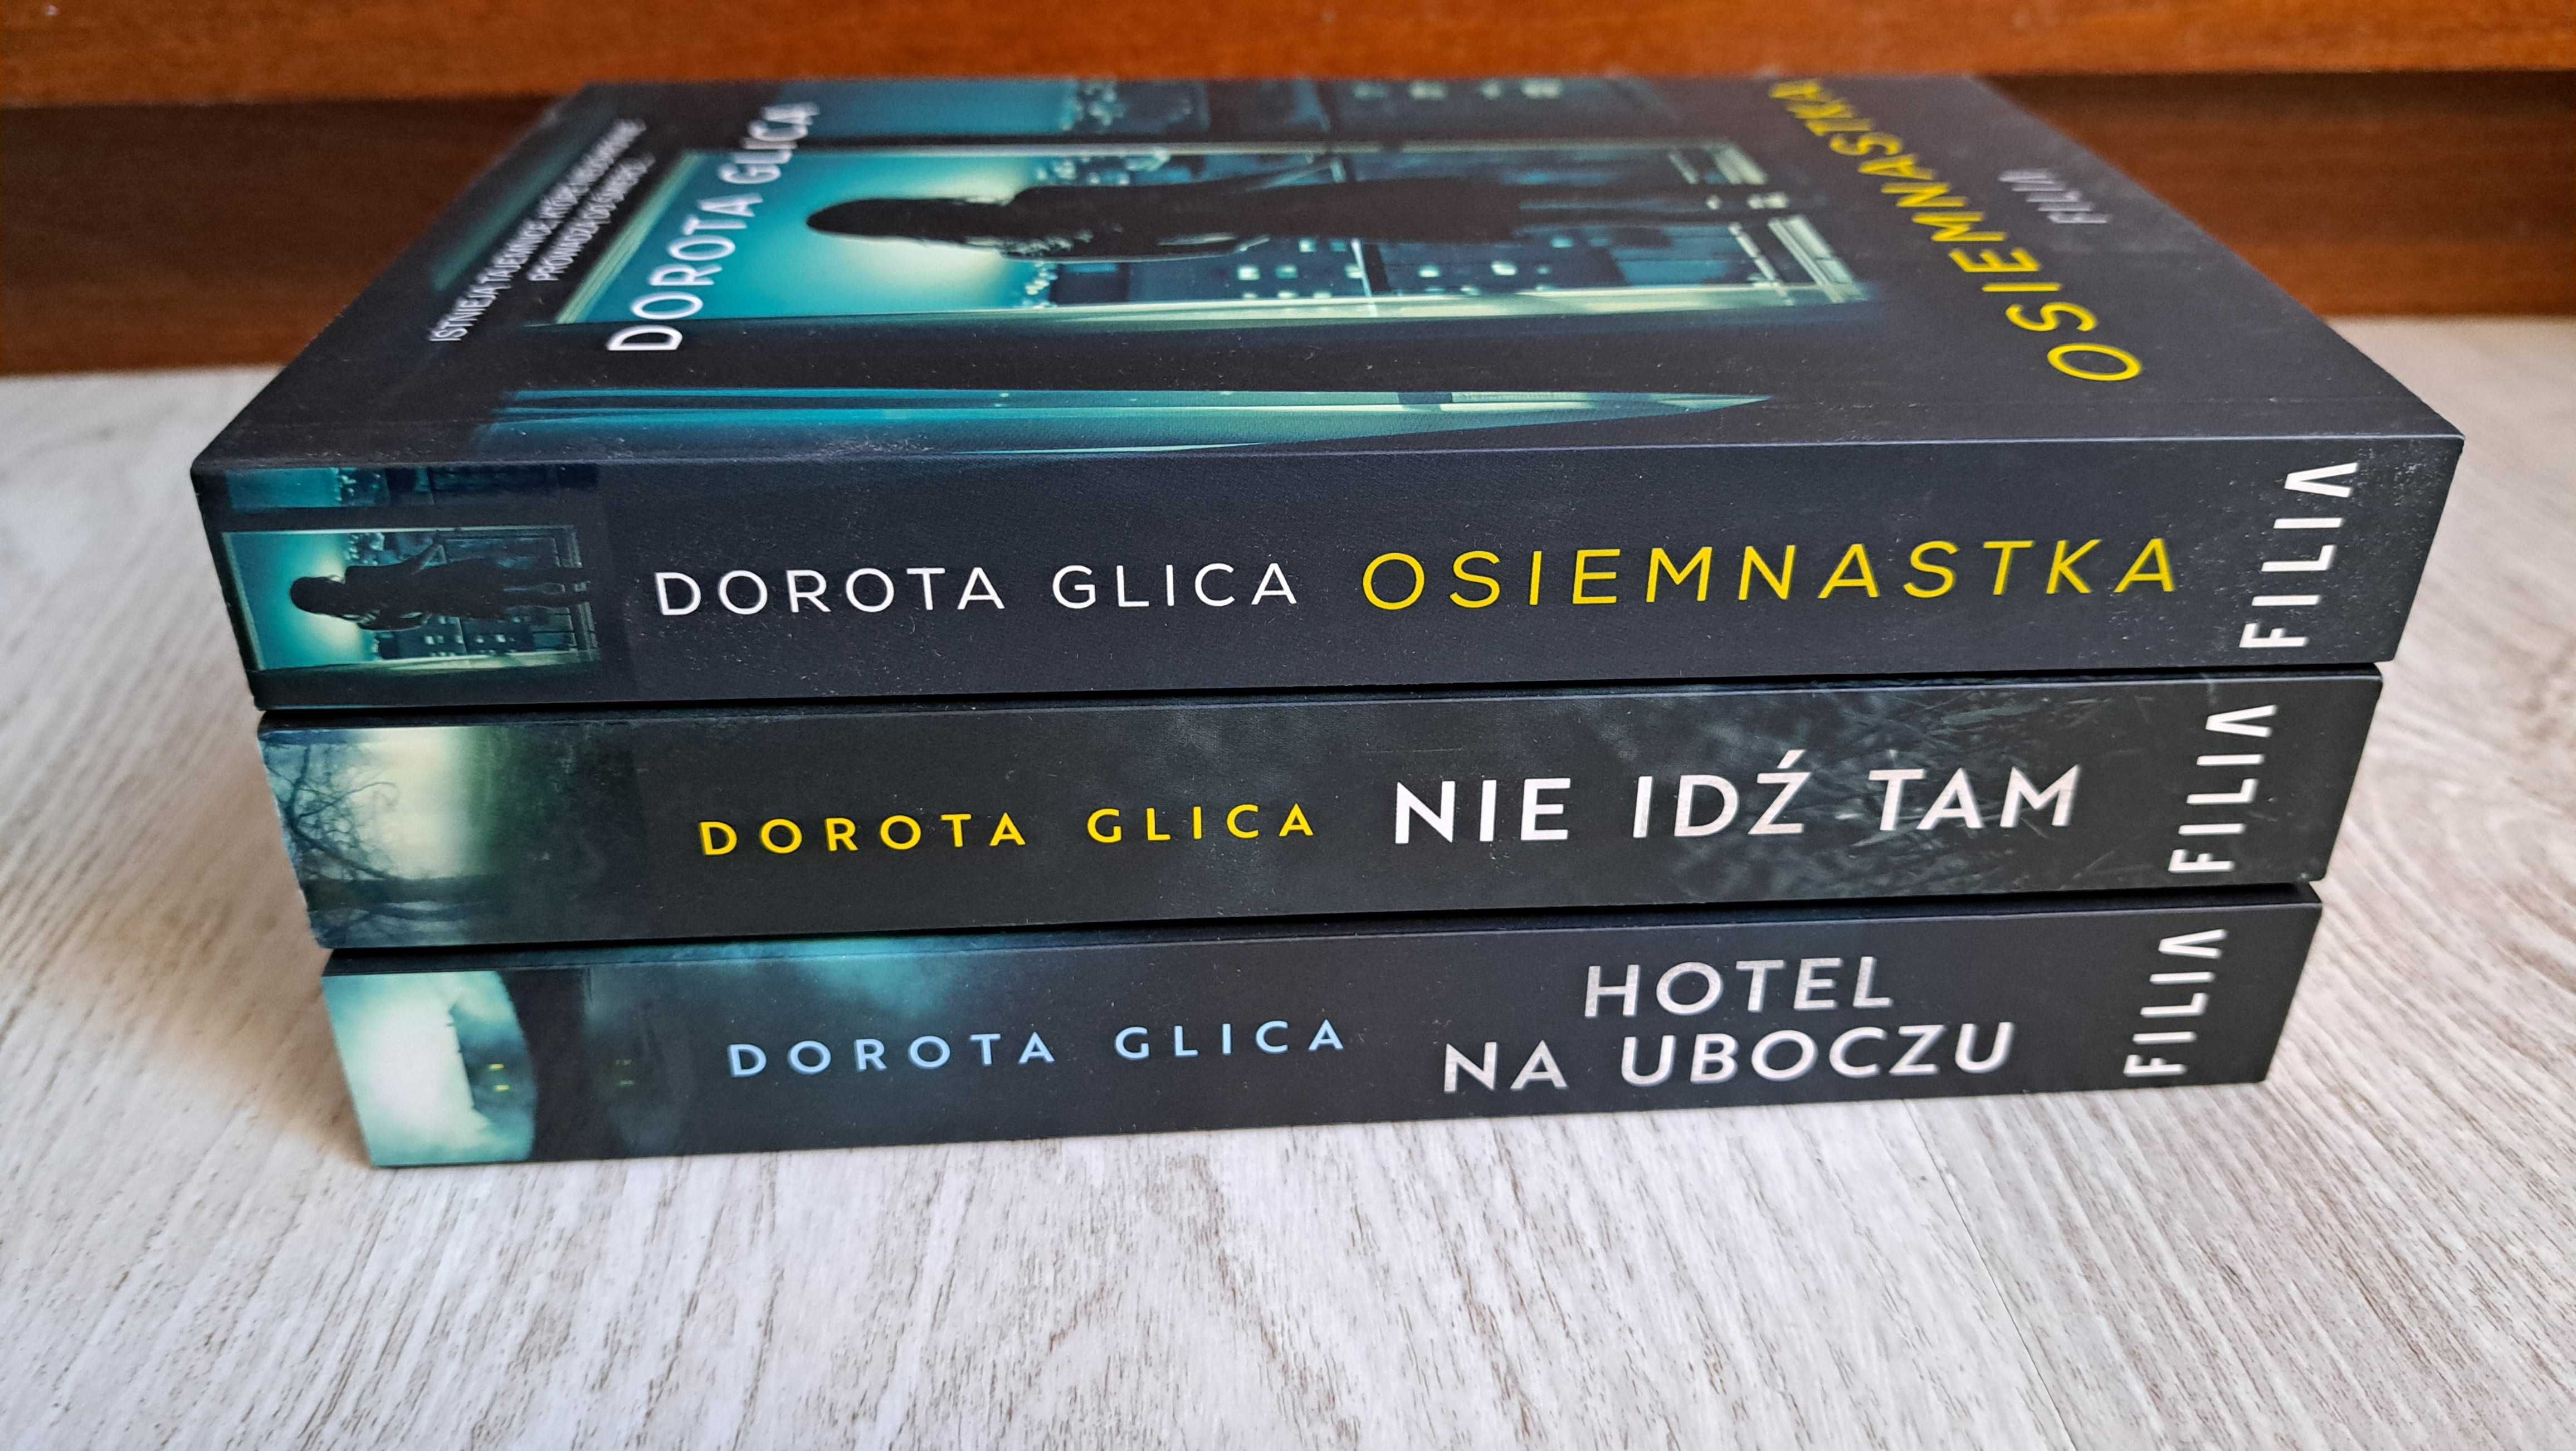 3x Dorota Glica Nie idź tam + Osiemnastka + Hotel na uboczu       nowe